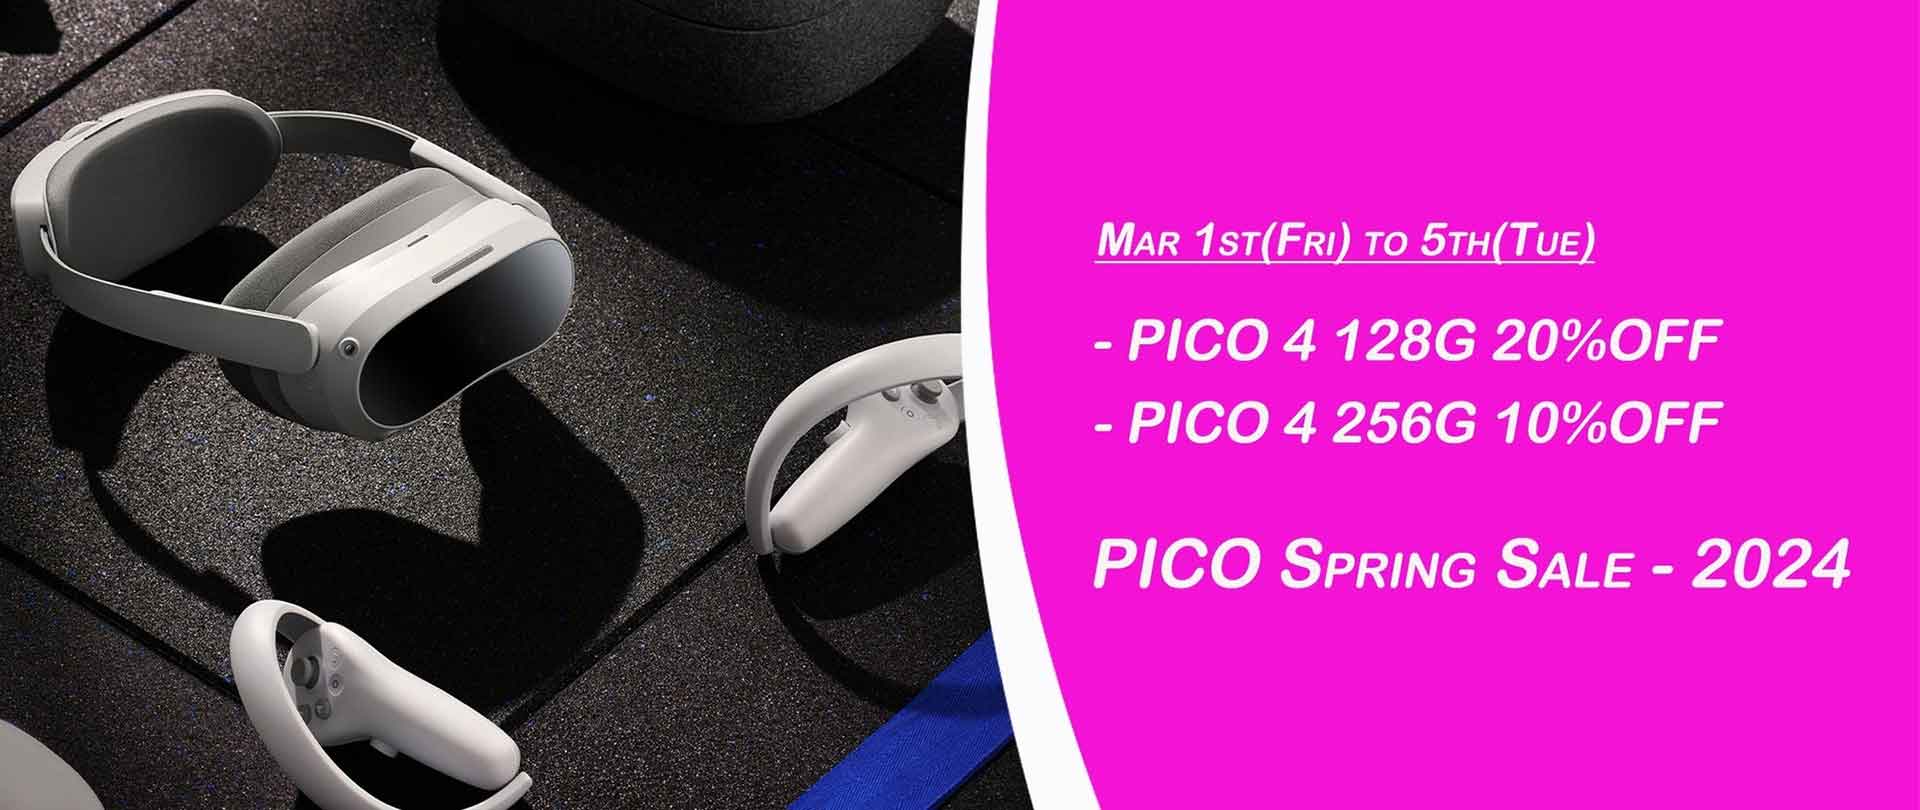 VRヘッドセット「PICO 4」スプリングセール。最大20% OFF - AV Watch